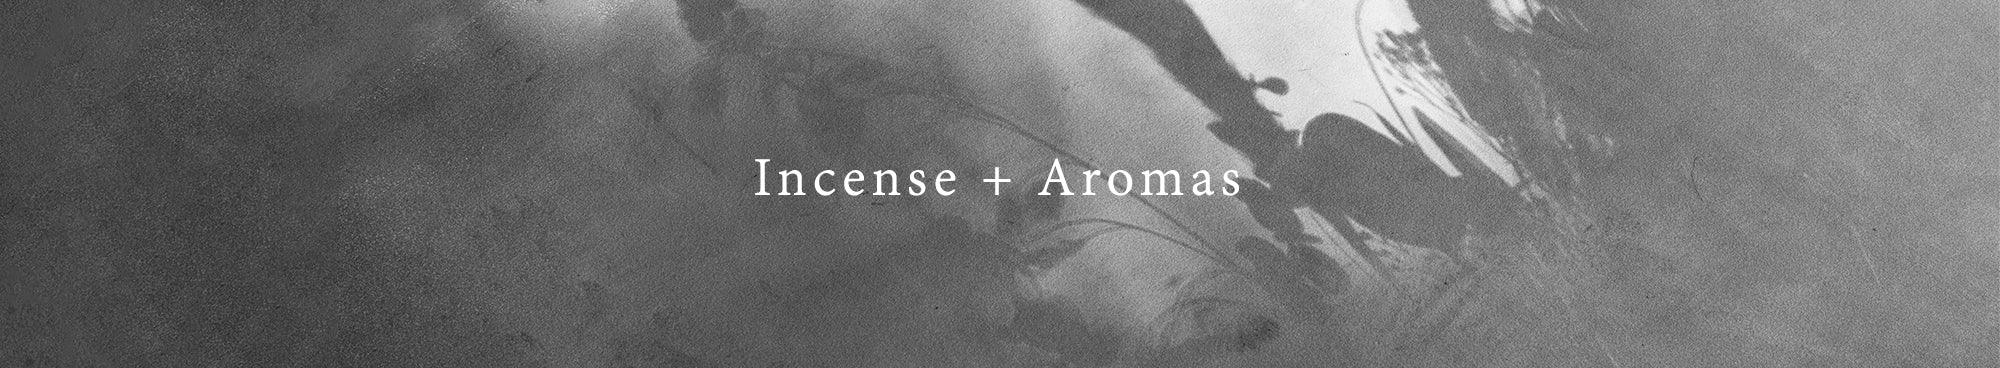 Incense + Aromas - Rikumo